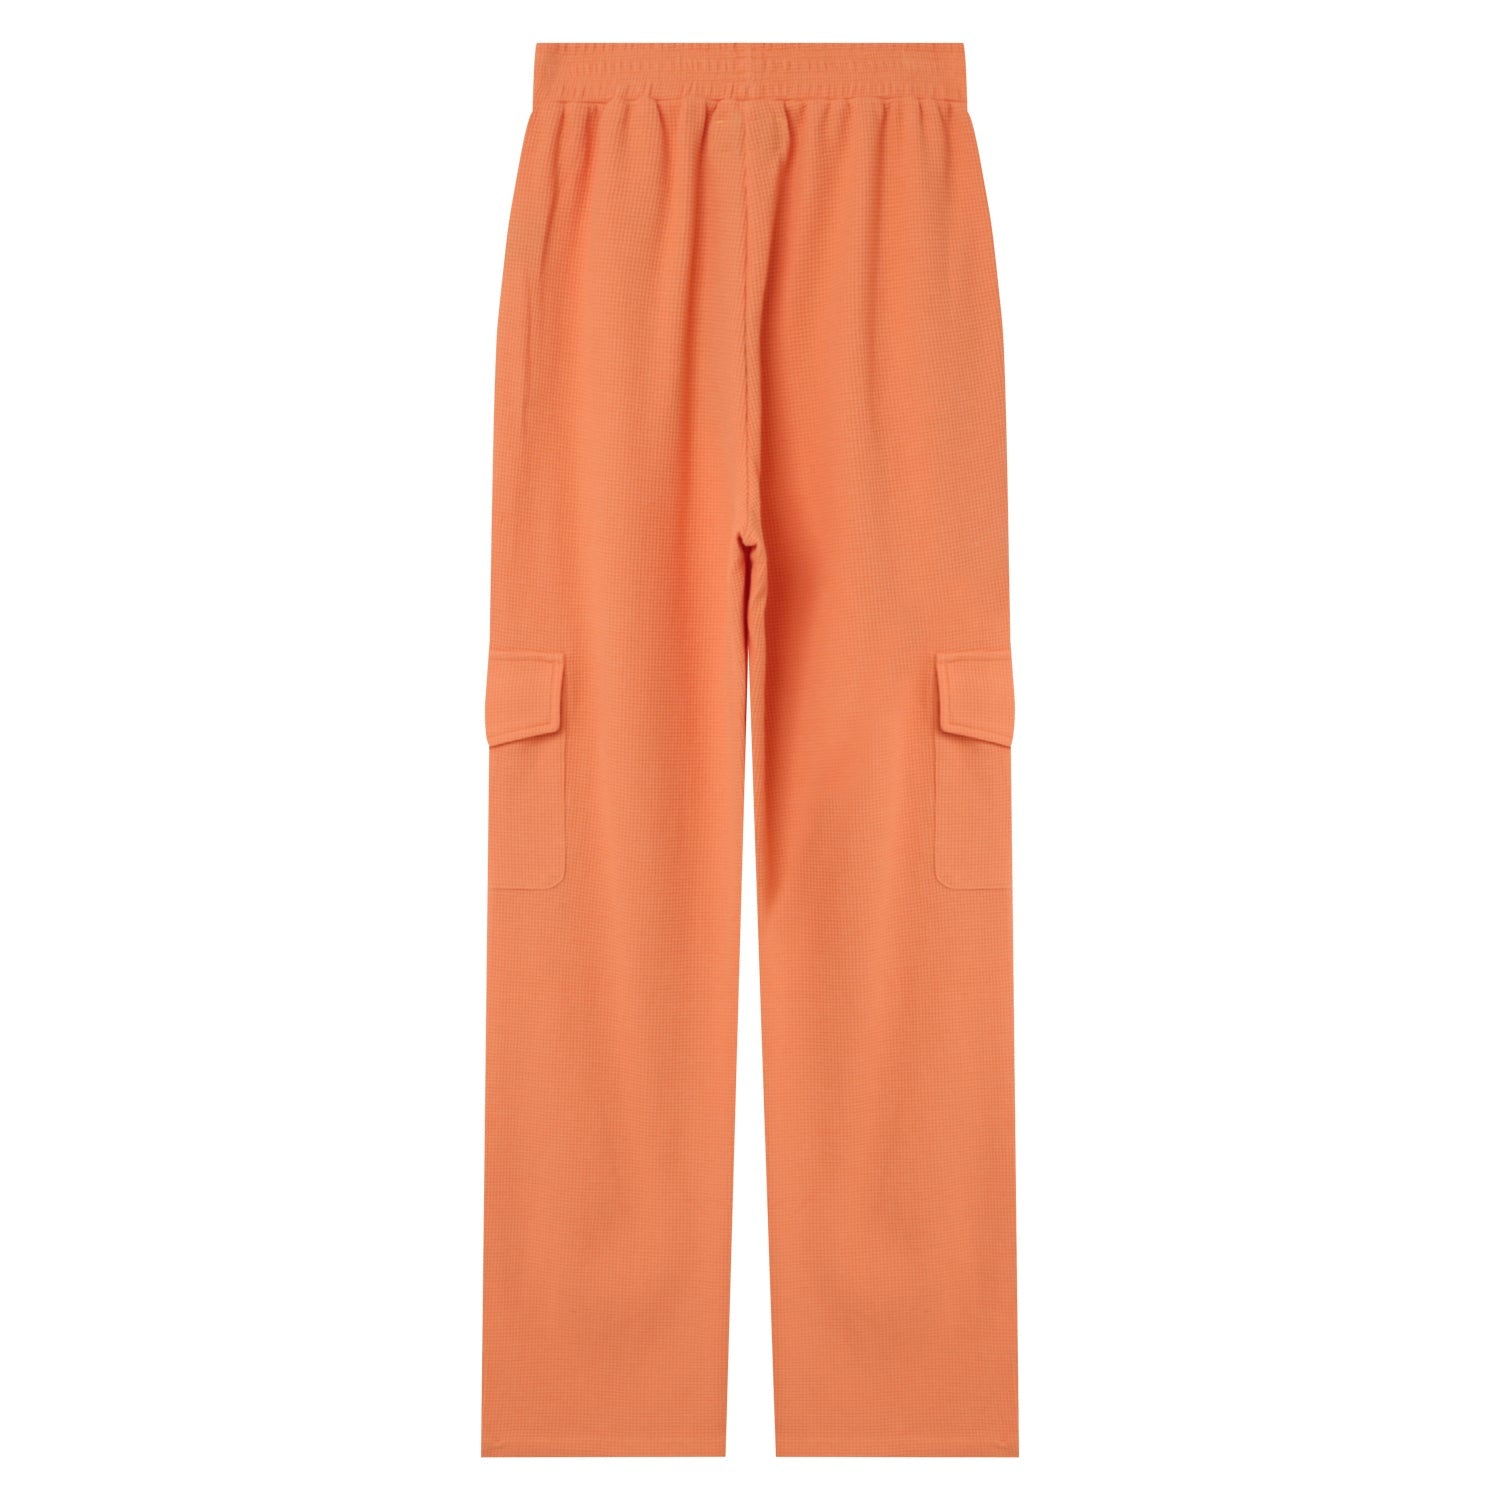 Sixth June - Pantalon droit gaufré Orange